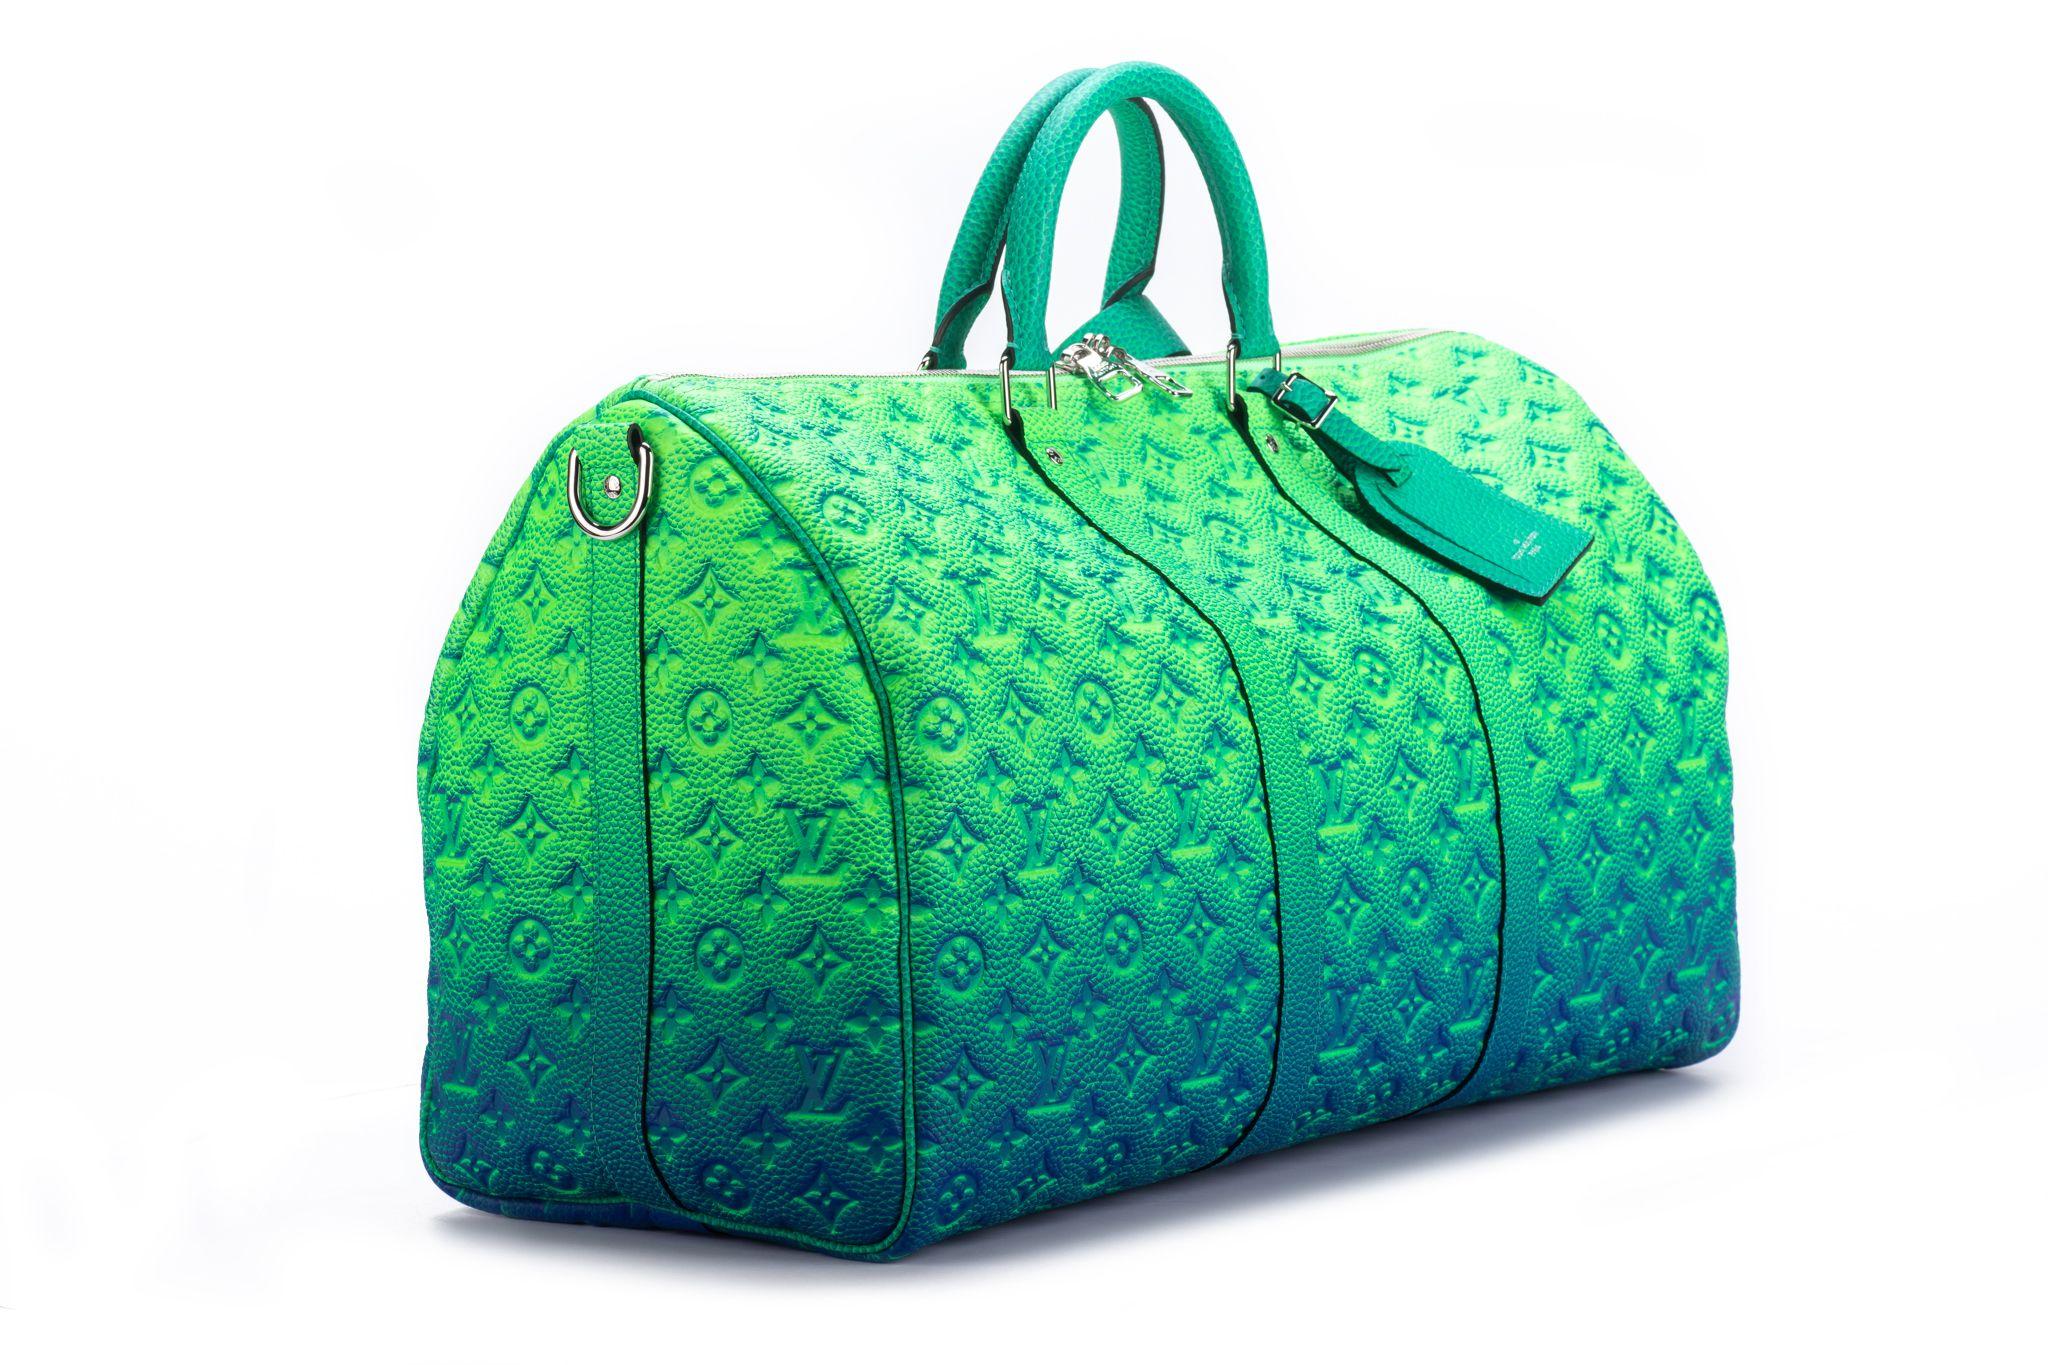 Le Keepall 50 Bandouliere de Louis Vuitton est fabriqué en cuir de veau mâle avec un doux vert multicolore. Ce sac est issu de la collection Virgil Abloh Illusion leather. Le sac Keepall 50 mérite bien son nom : son intérieur étonnamment spacieux